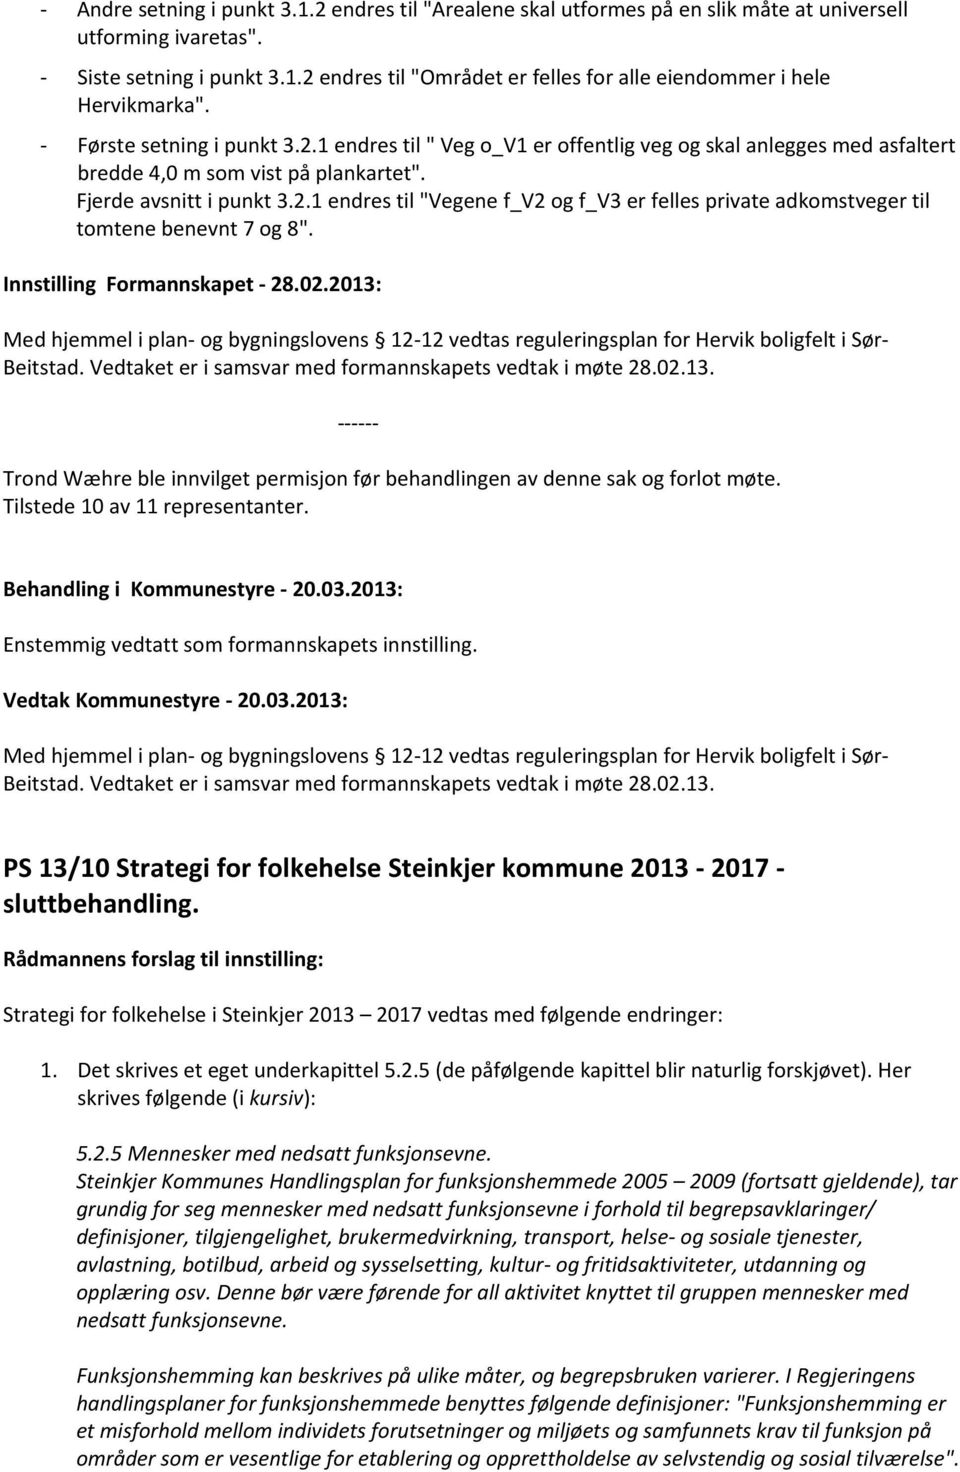 Innstilling Formannskapet - 28.02.2013: Med hjemmel i plan- og bygningslovens 12-12 vedtas reguleringsplan for Hervik boligfelt i Sør- Beitstad.